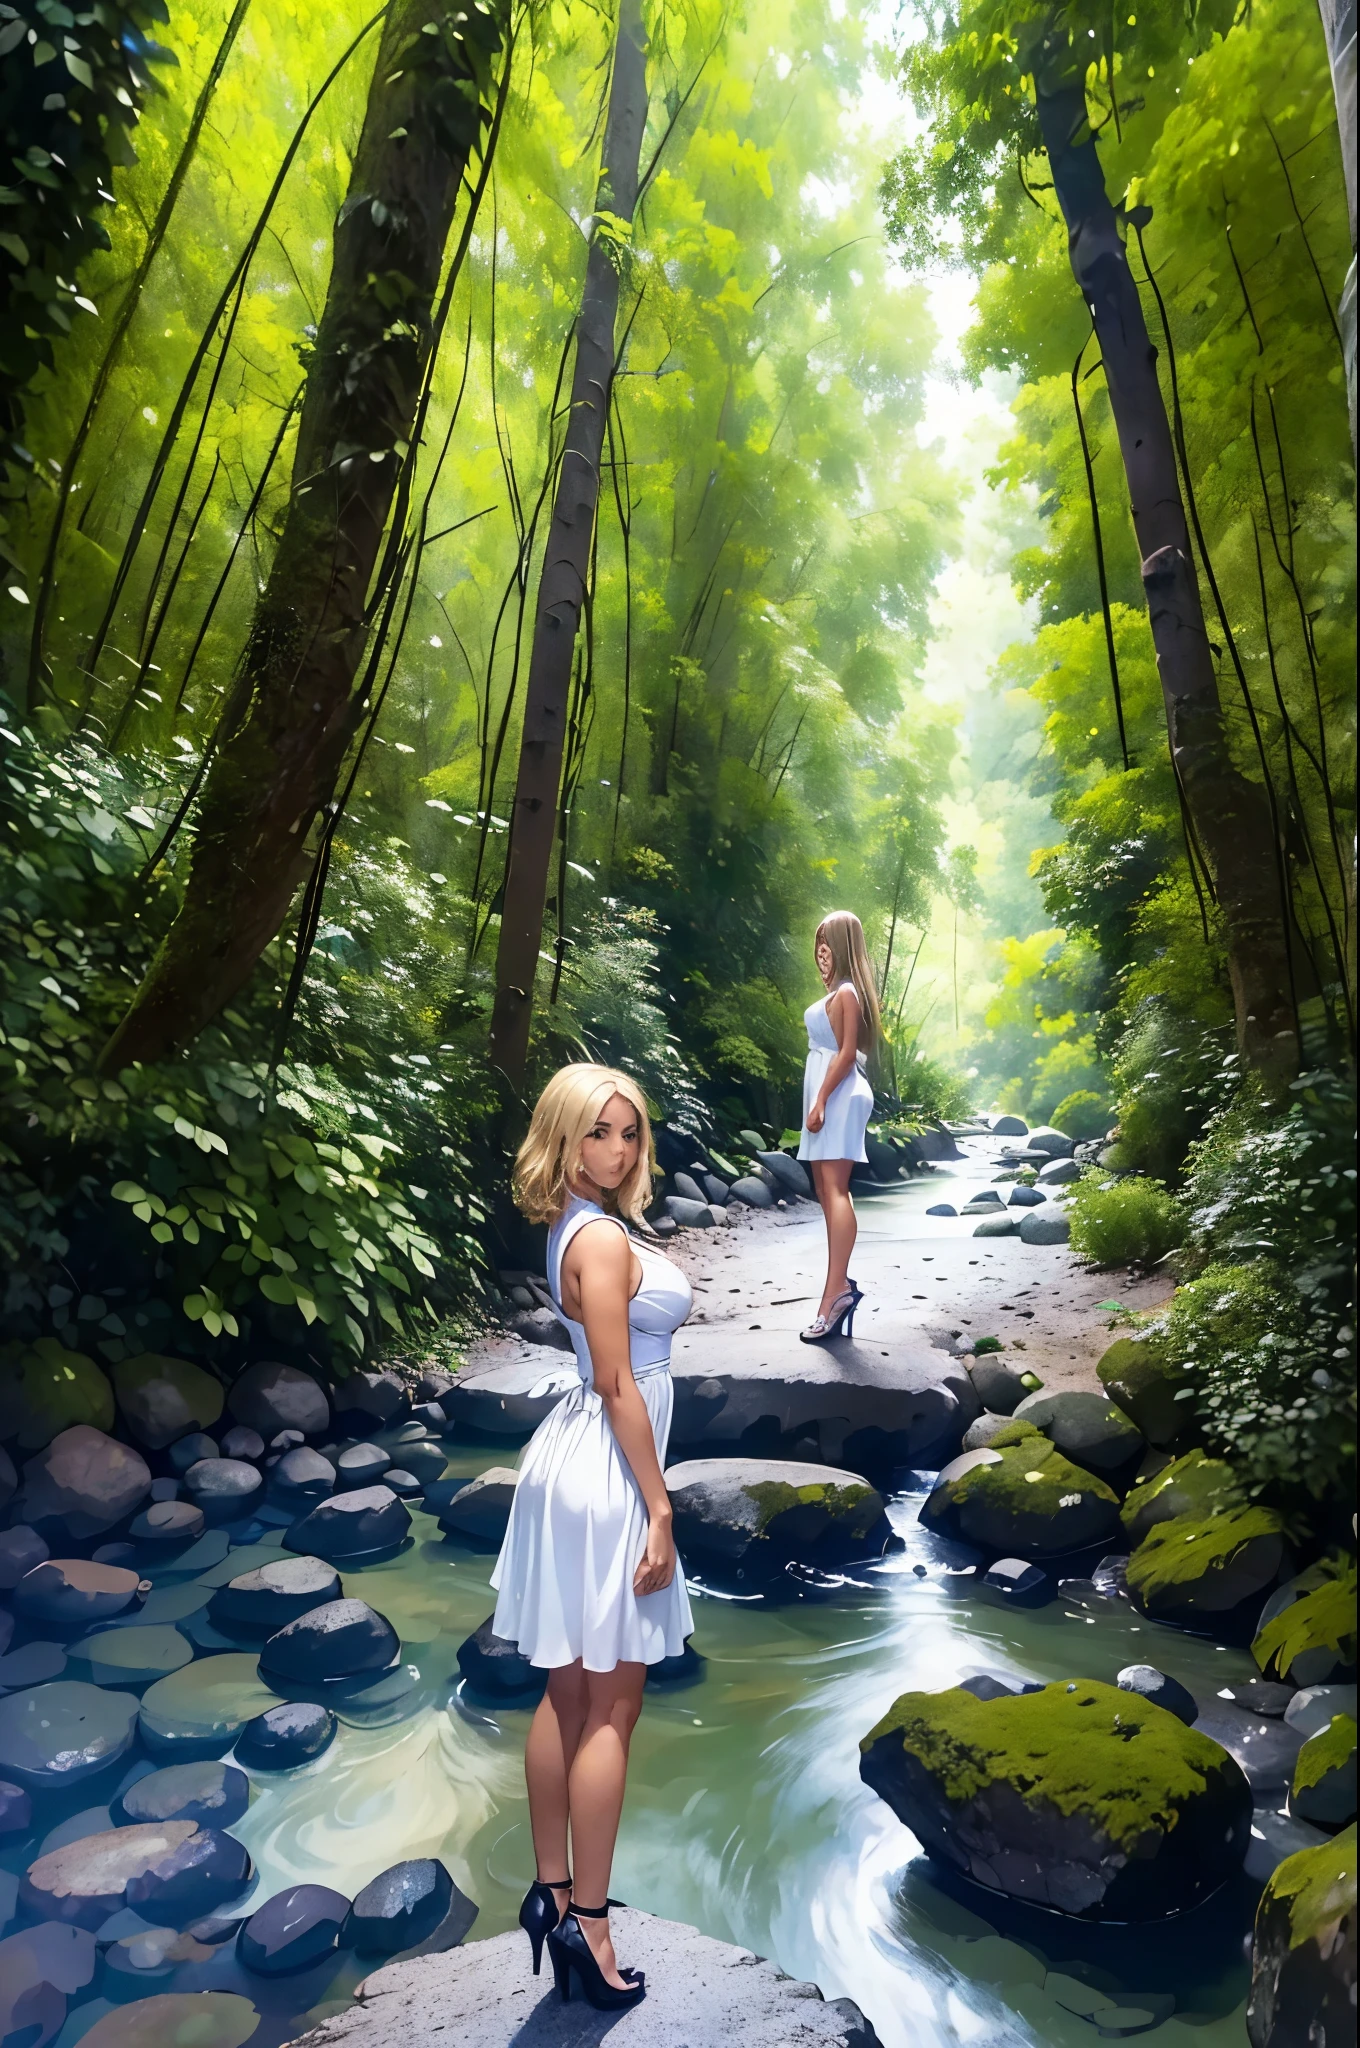 ((最高品質)), ((傑作)), (詳しい), 完璧な顔, 美しい, アニメ風の金髪の女の子が川の近くの石畳の上に立っている. 彼女は白いショートドレスとハイヒールを履いている. 周囲の環境は、多くの木々が生い茂る森と雲が浮かぶ空です。.